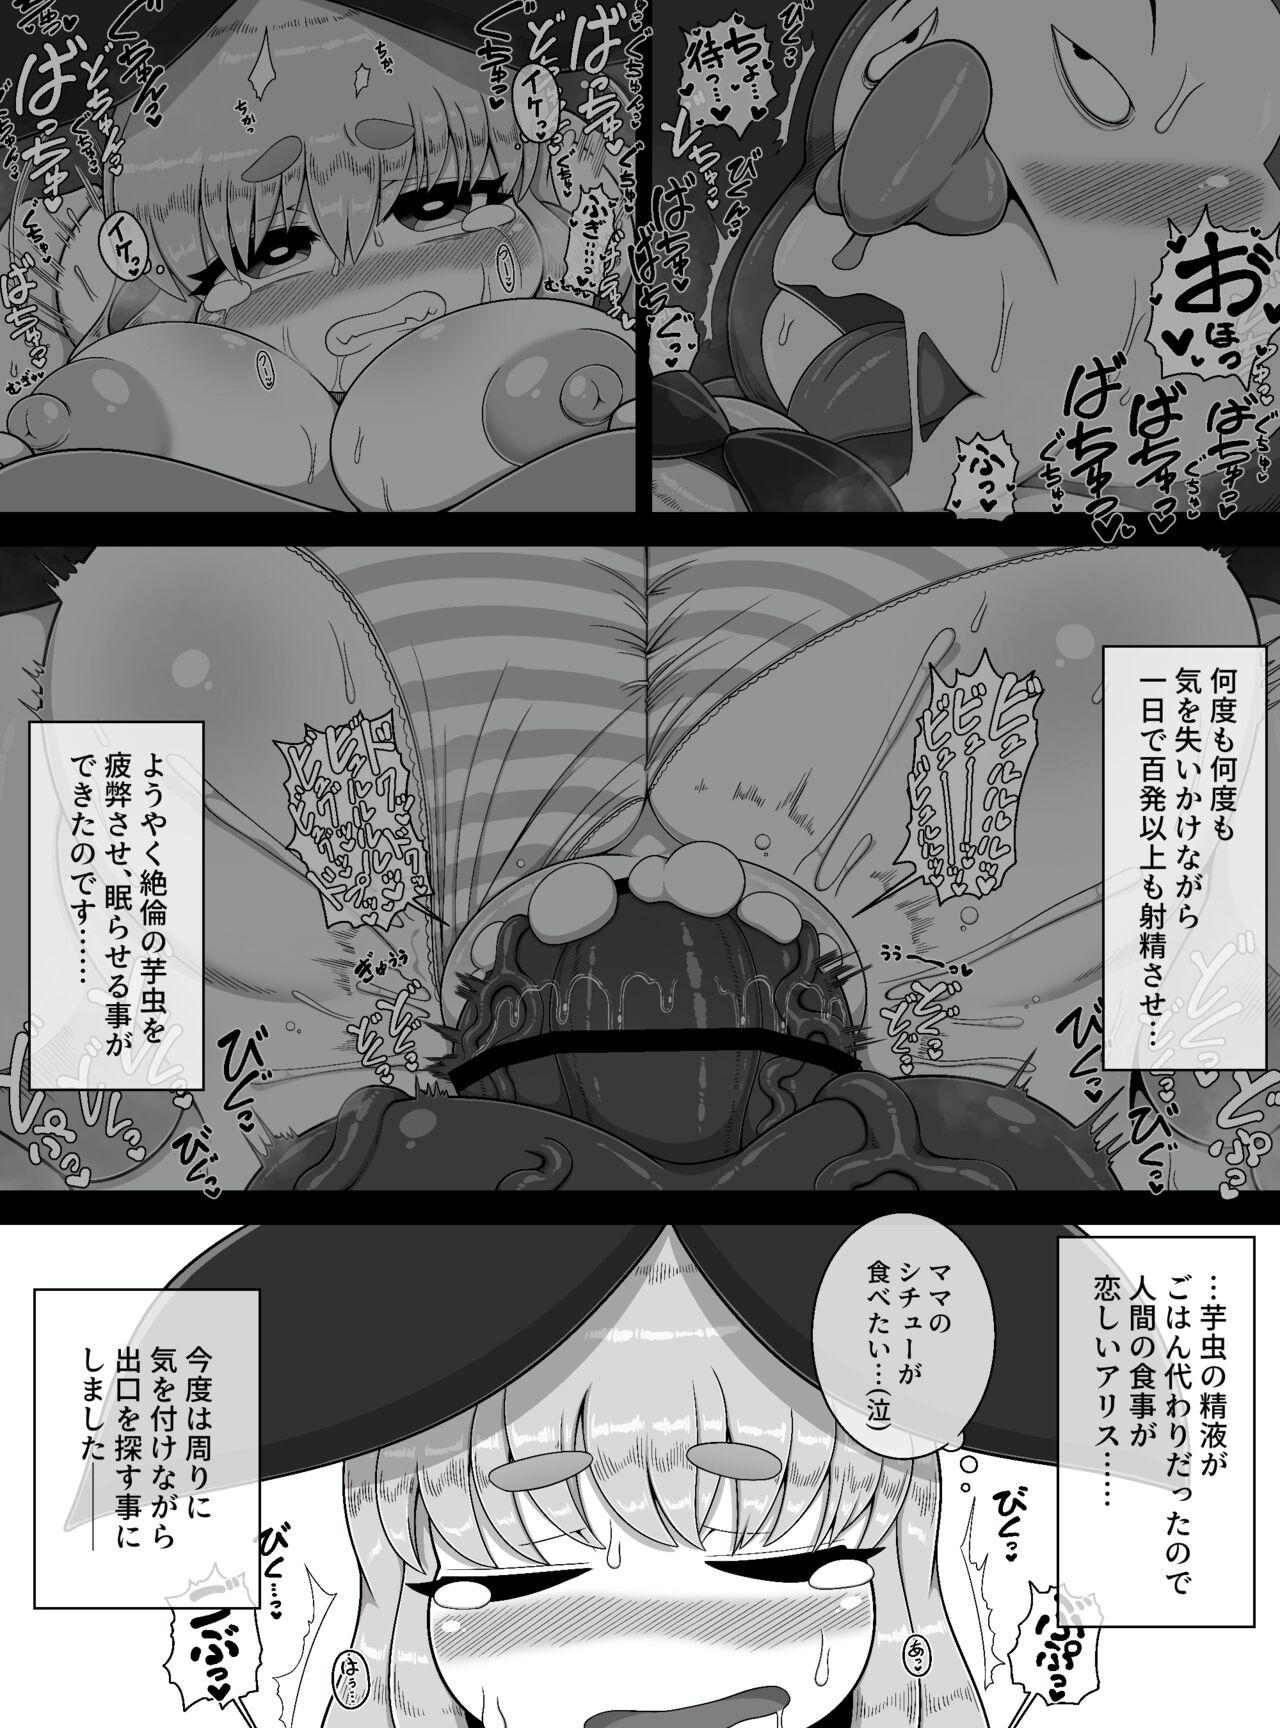 Fushiginokuni de Arisu ga okasa reru dake no manga 18